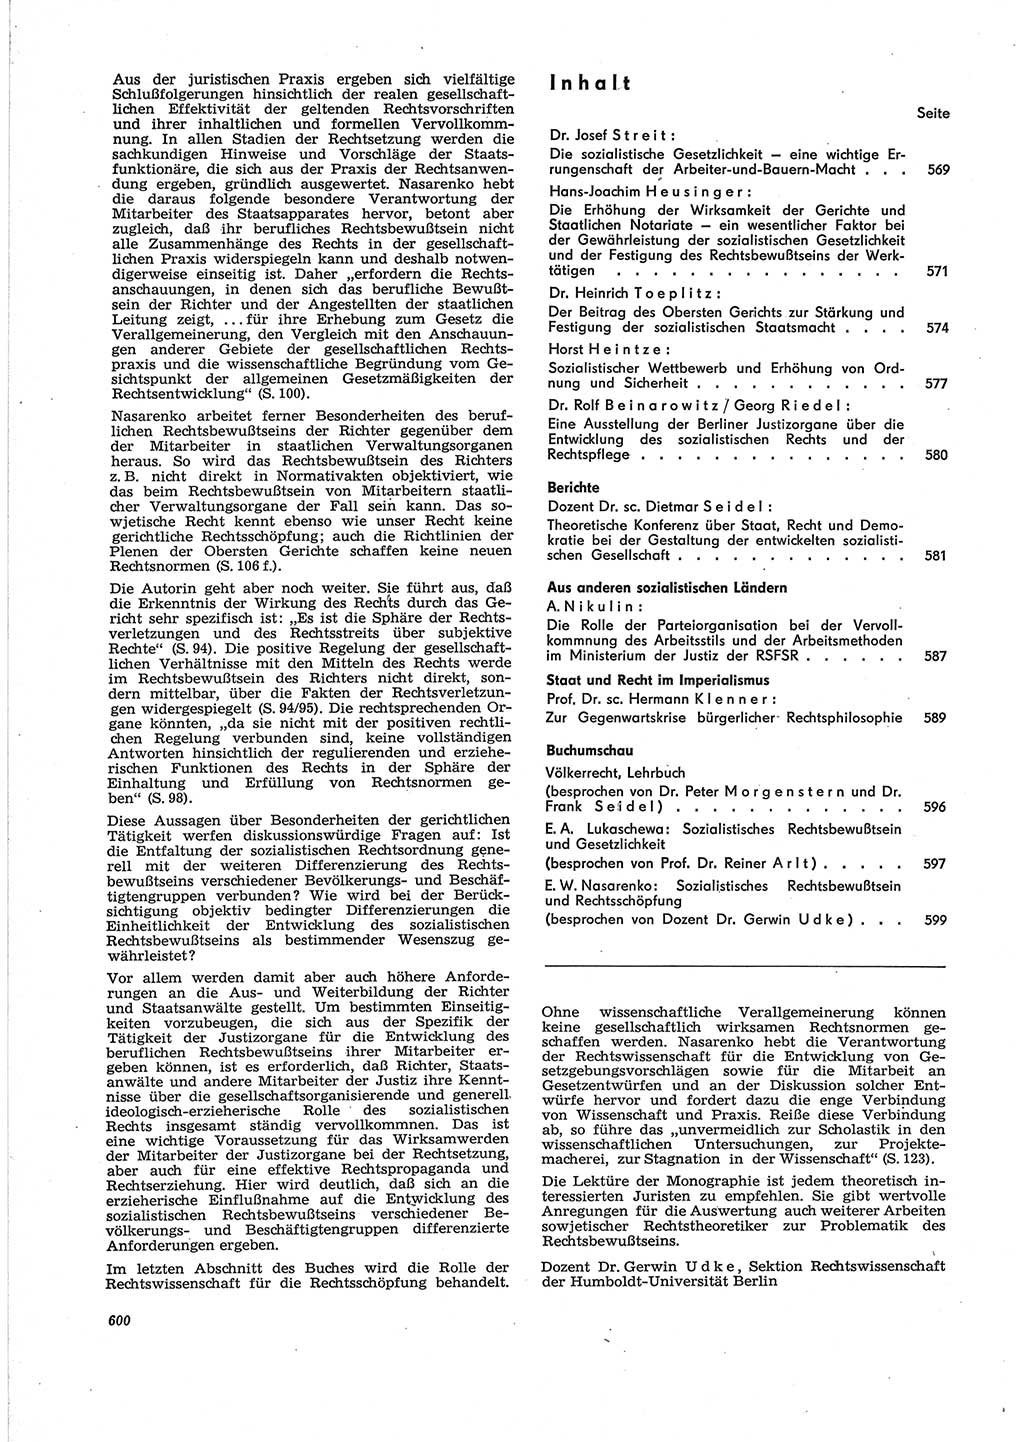 Neue Justiz (NJ), Zeitschrift für Recht und Rechtswissenschaft [Deutsche Demokratische Republik (DDR)], 28. Jahrgang 1974, Seite 600 (NJ DDR 1974, S. 600)